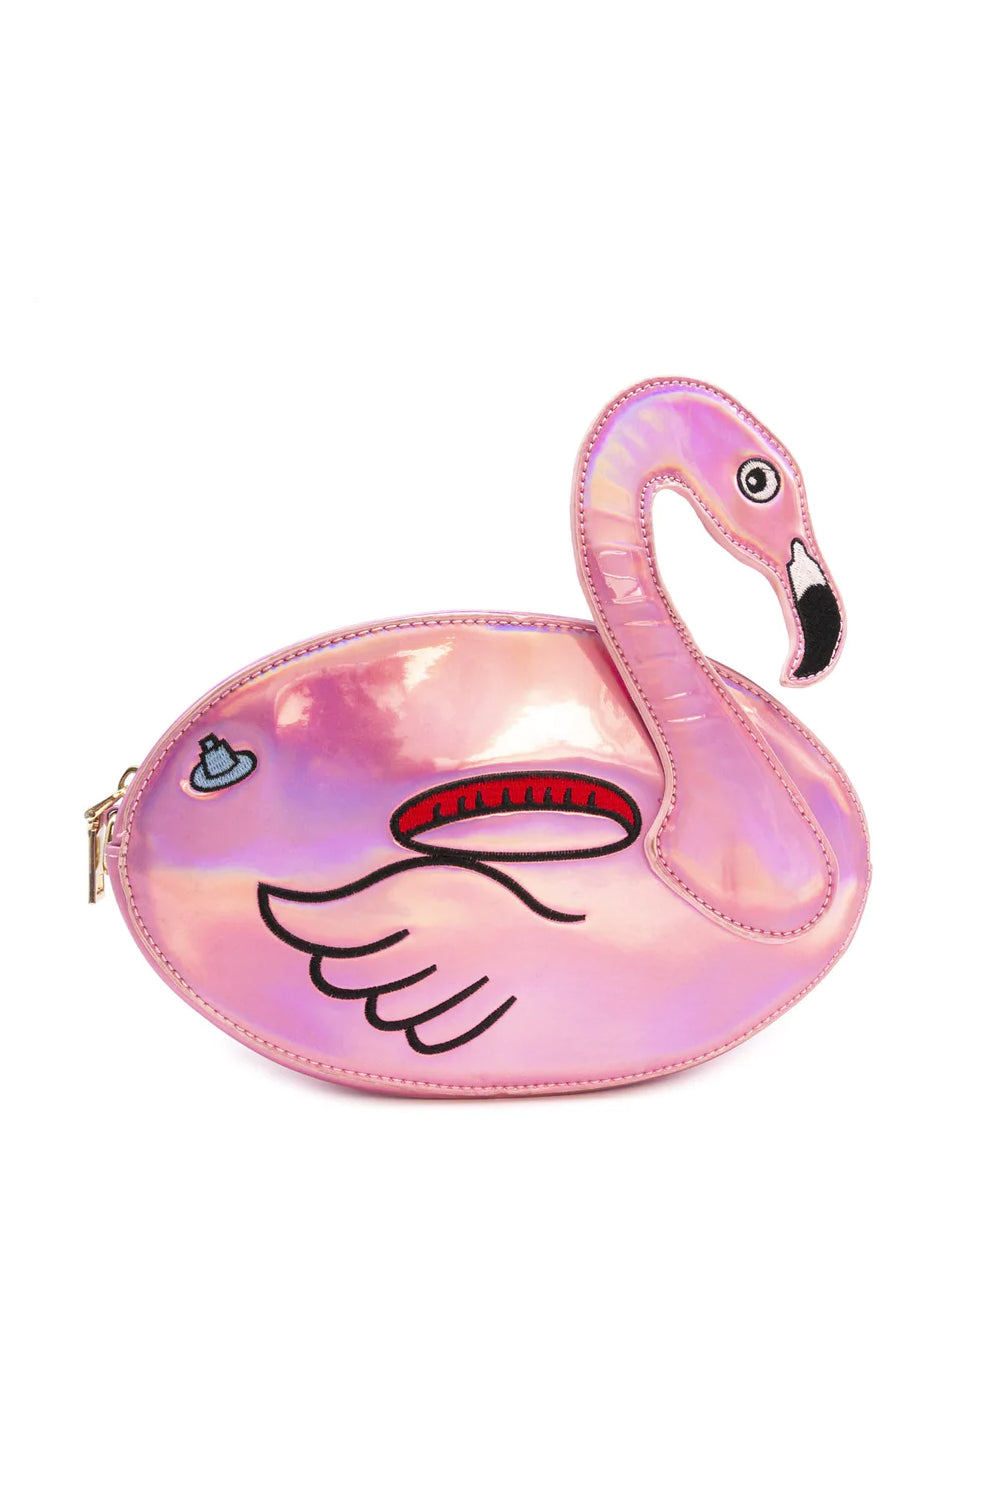 Fun Flamingo Floaty Party Handbag Image 1